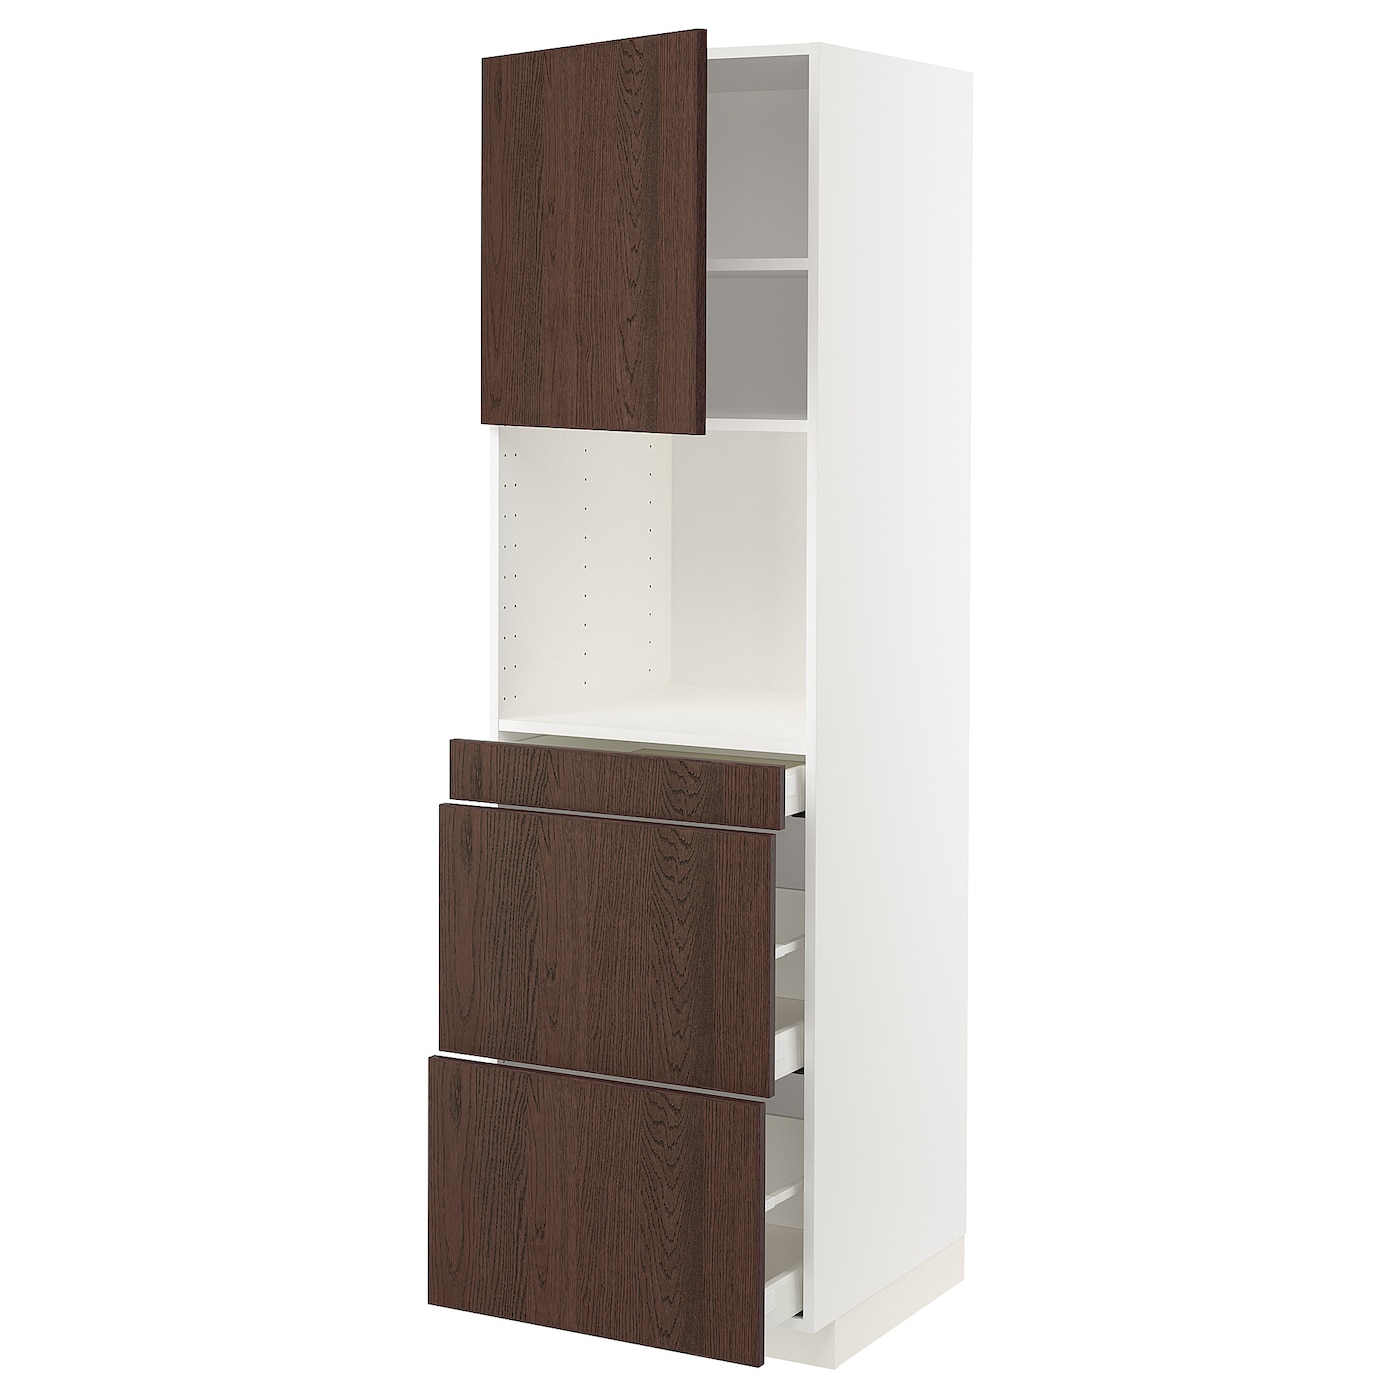 Шкаф - METOD / MAXIMERA  IKEA/ МЕТОД/МАКСИМЕРА  ИКЕА,  208х60 см, коричневый/белый